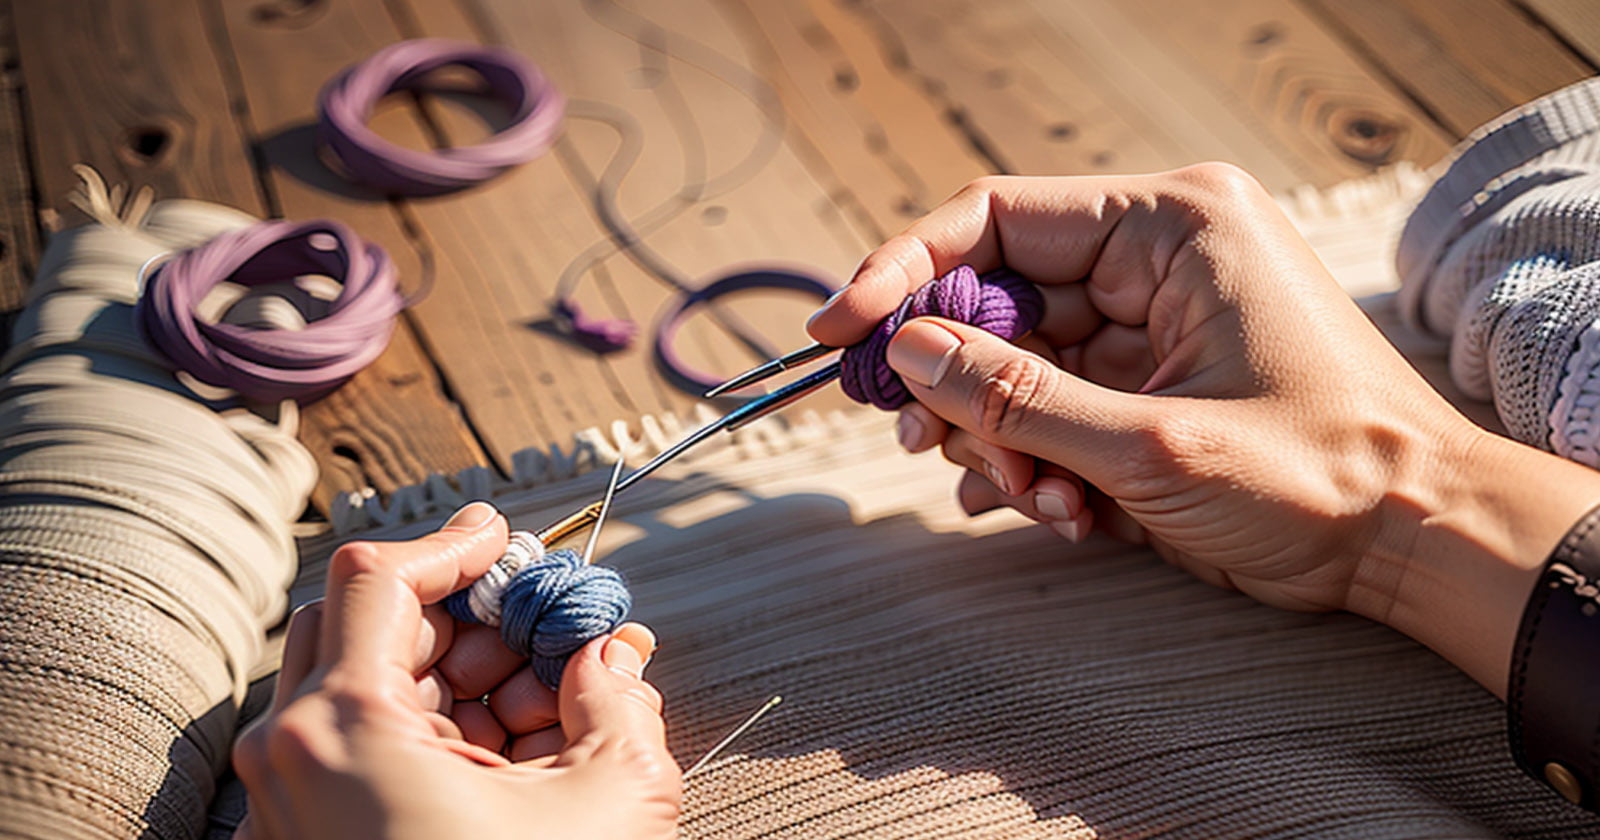 Pontos mágicos de crochê: Aprenda as técnicas essenciais para criar peças incríveis